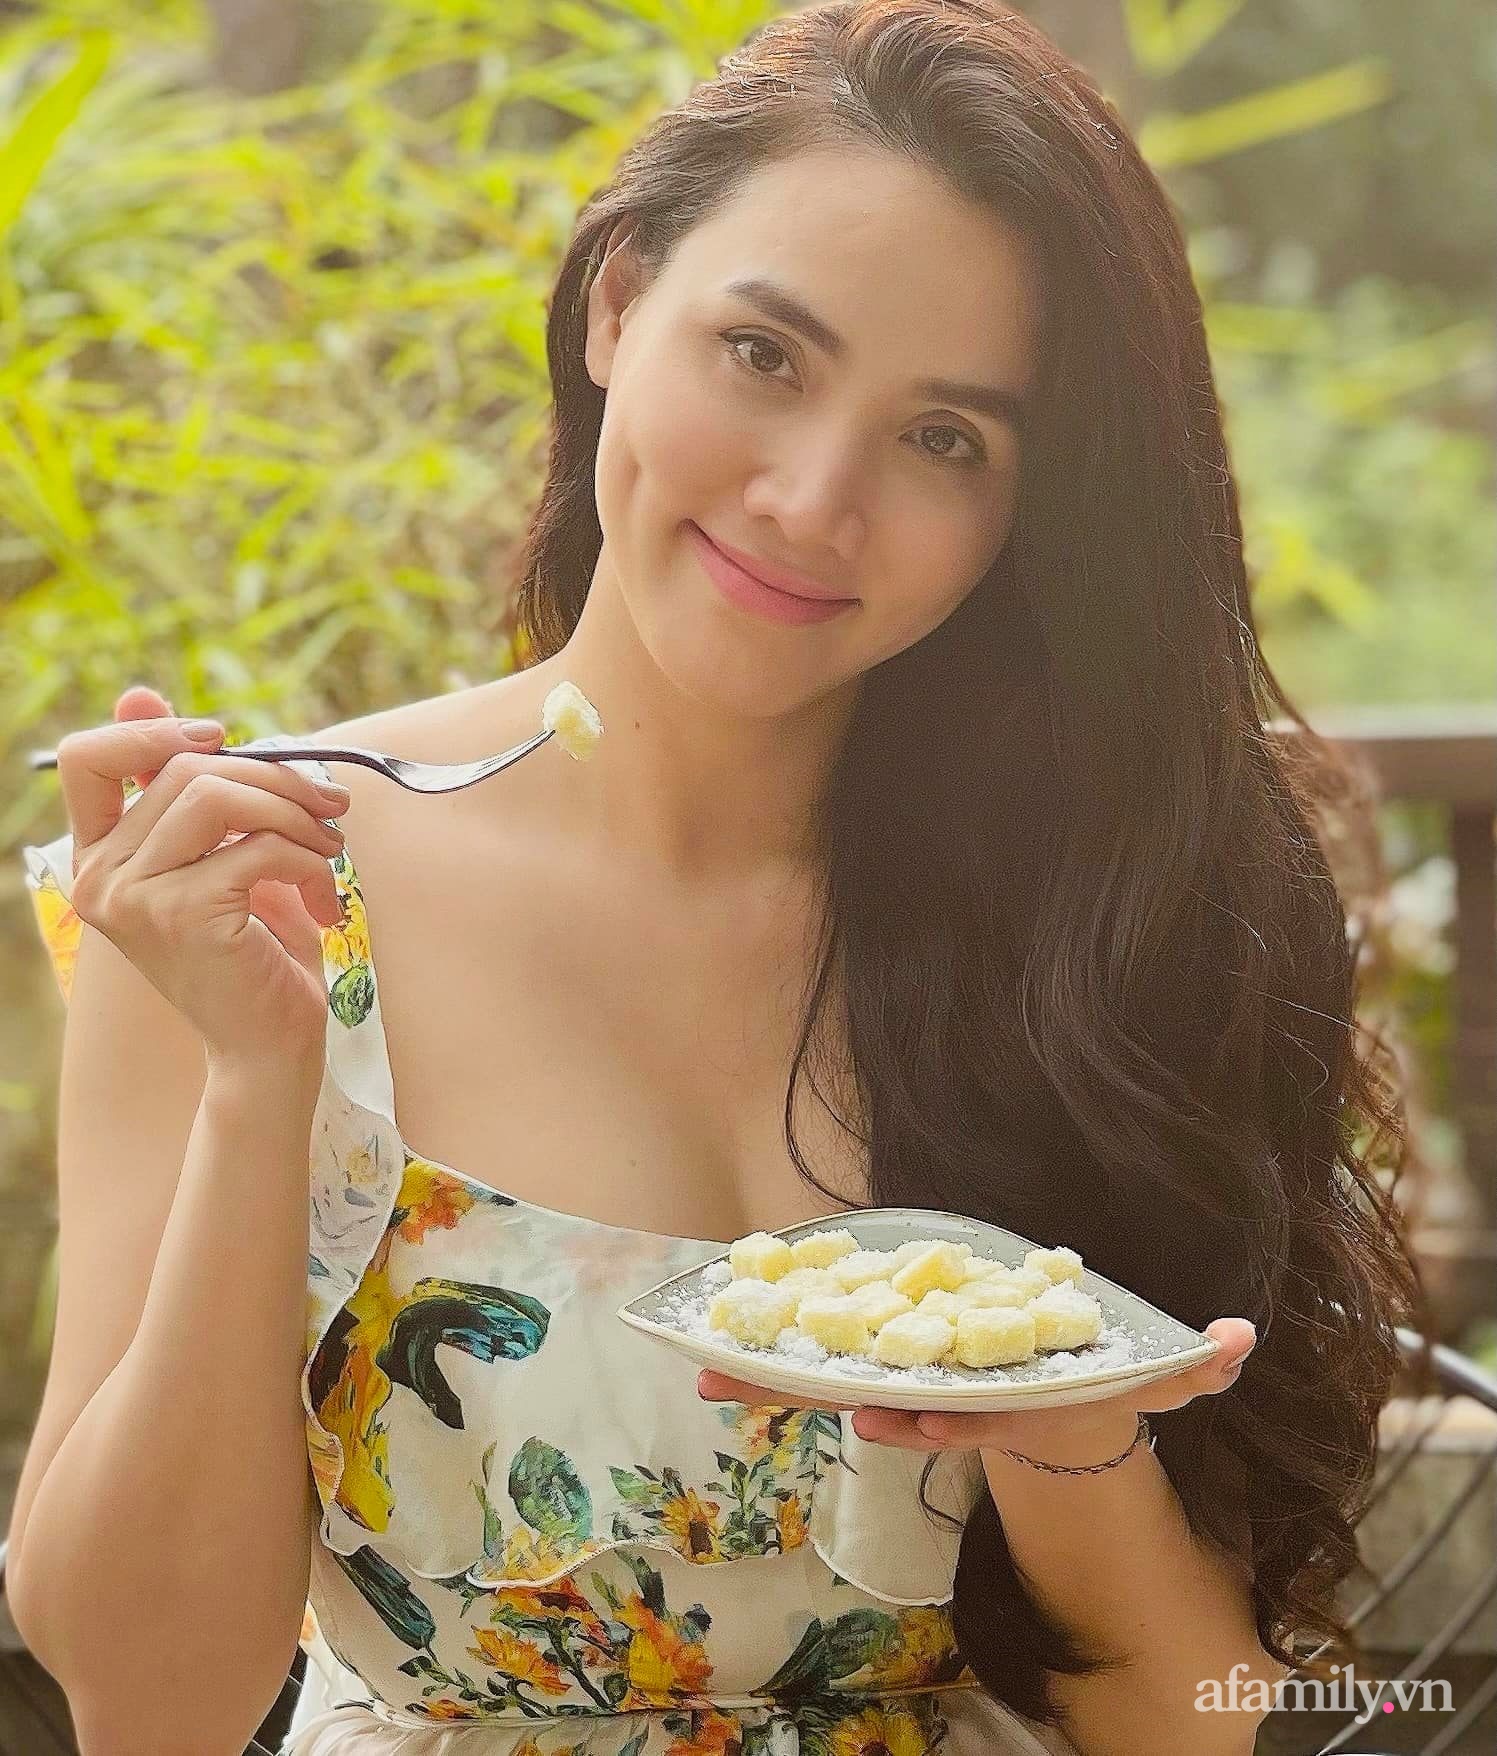 Người mẫu, diễn viên Trang Nhung bật mí bí kíp kinh doanh thành công khi lần đầu khởi nghiệp với món kẹo dừa Luxury  - Ảnh 1.